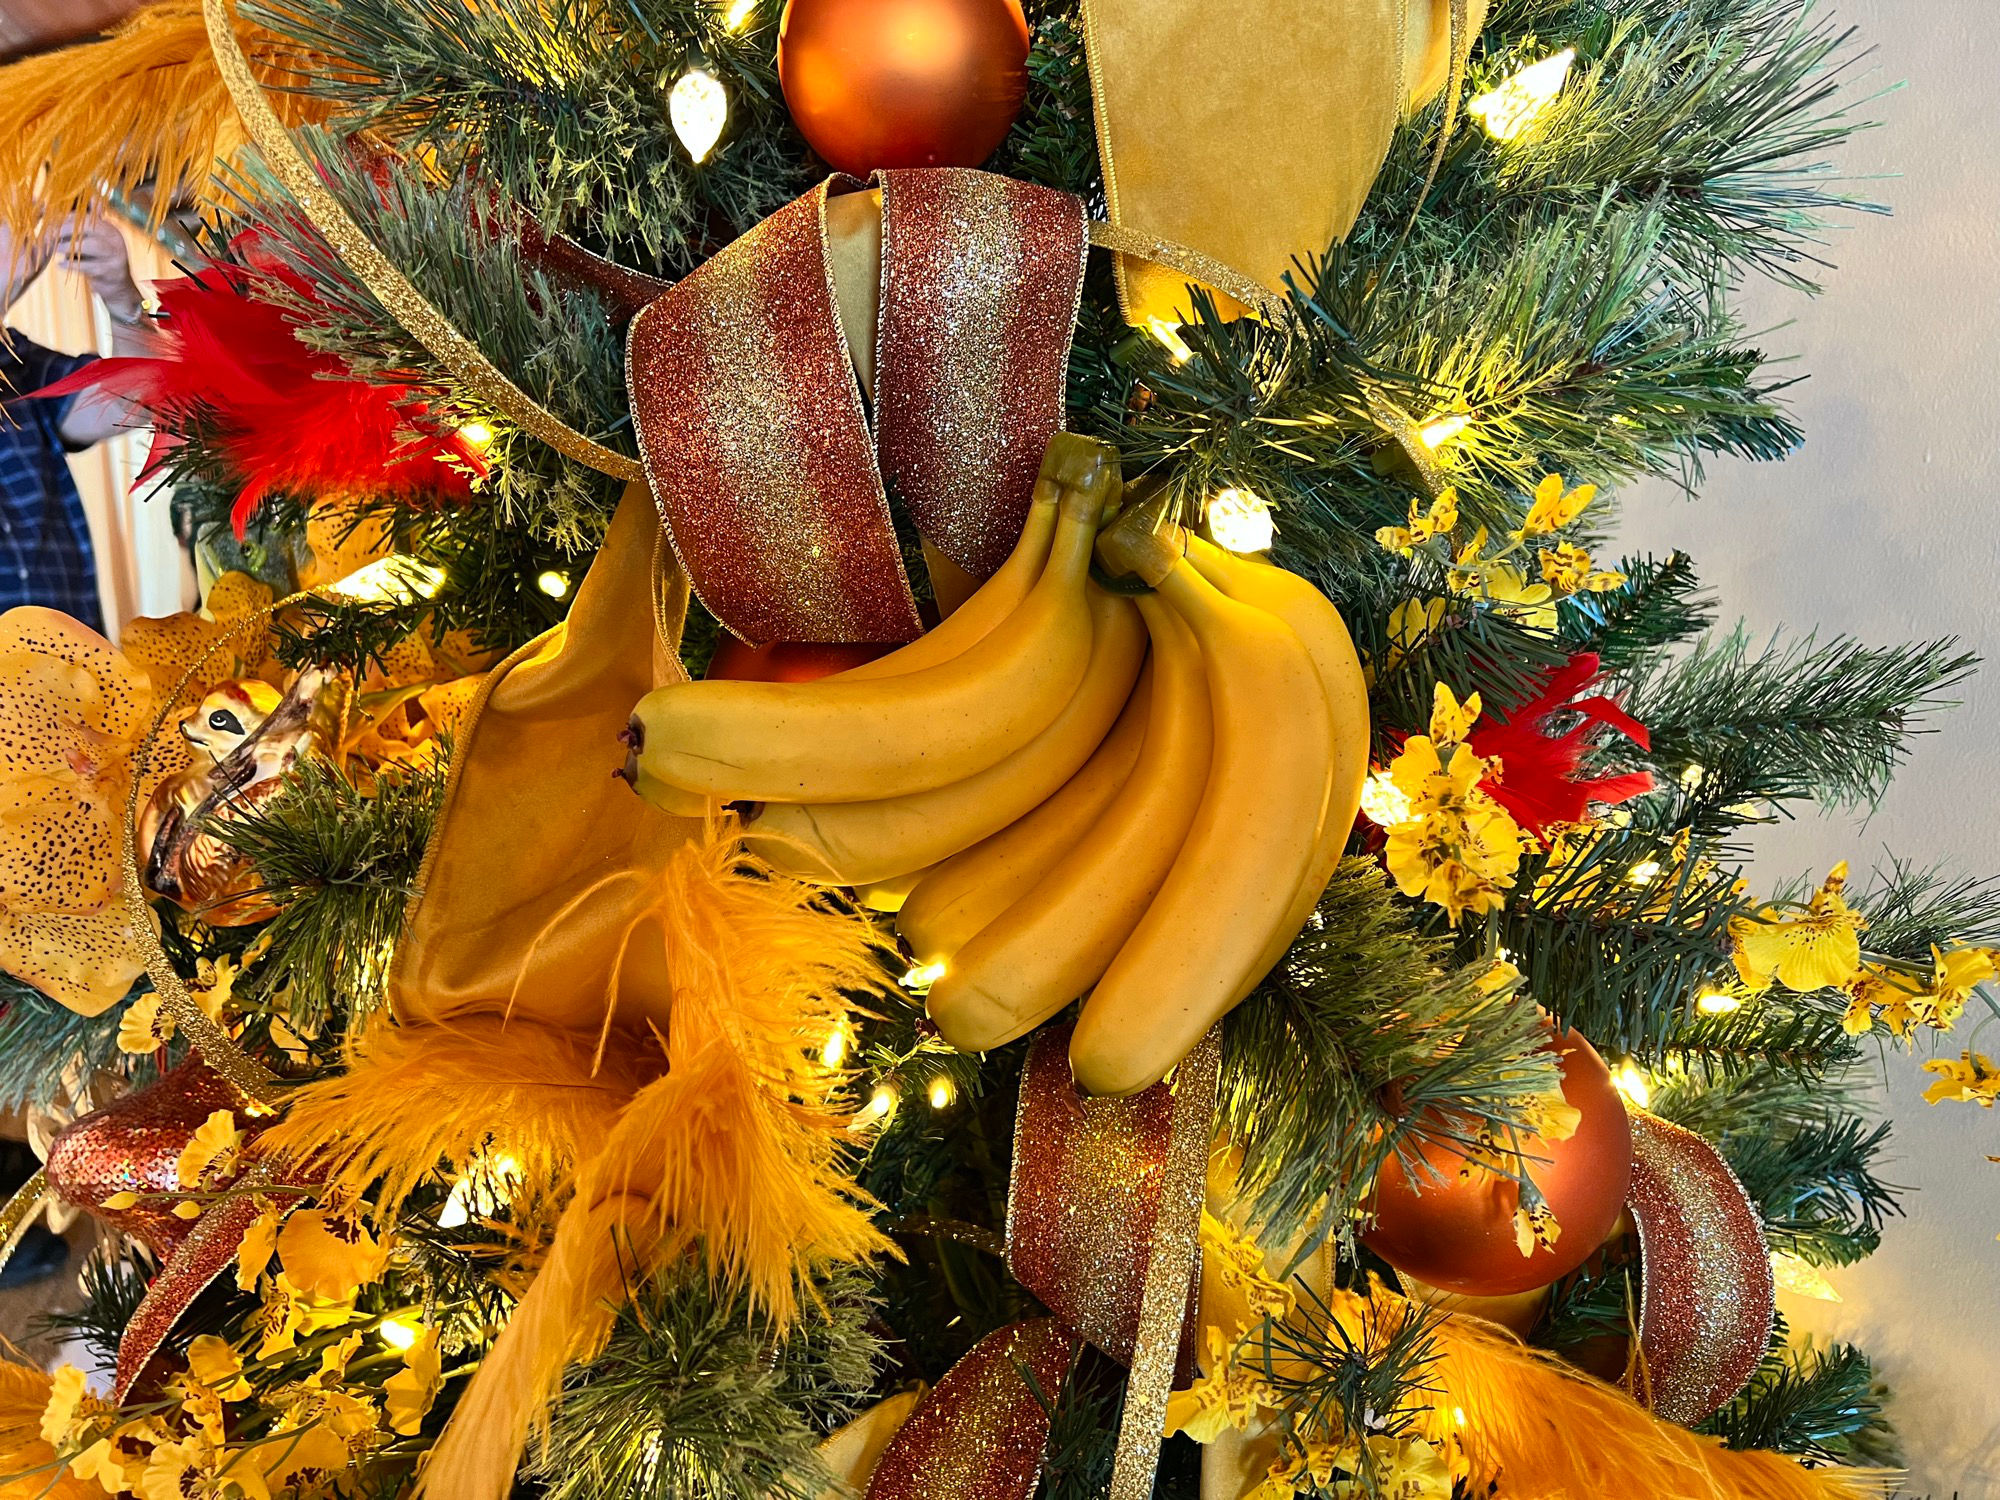 Bananas Christmas Ornaments